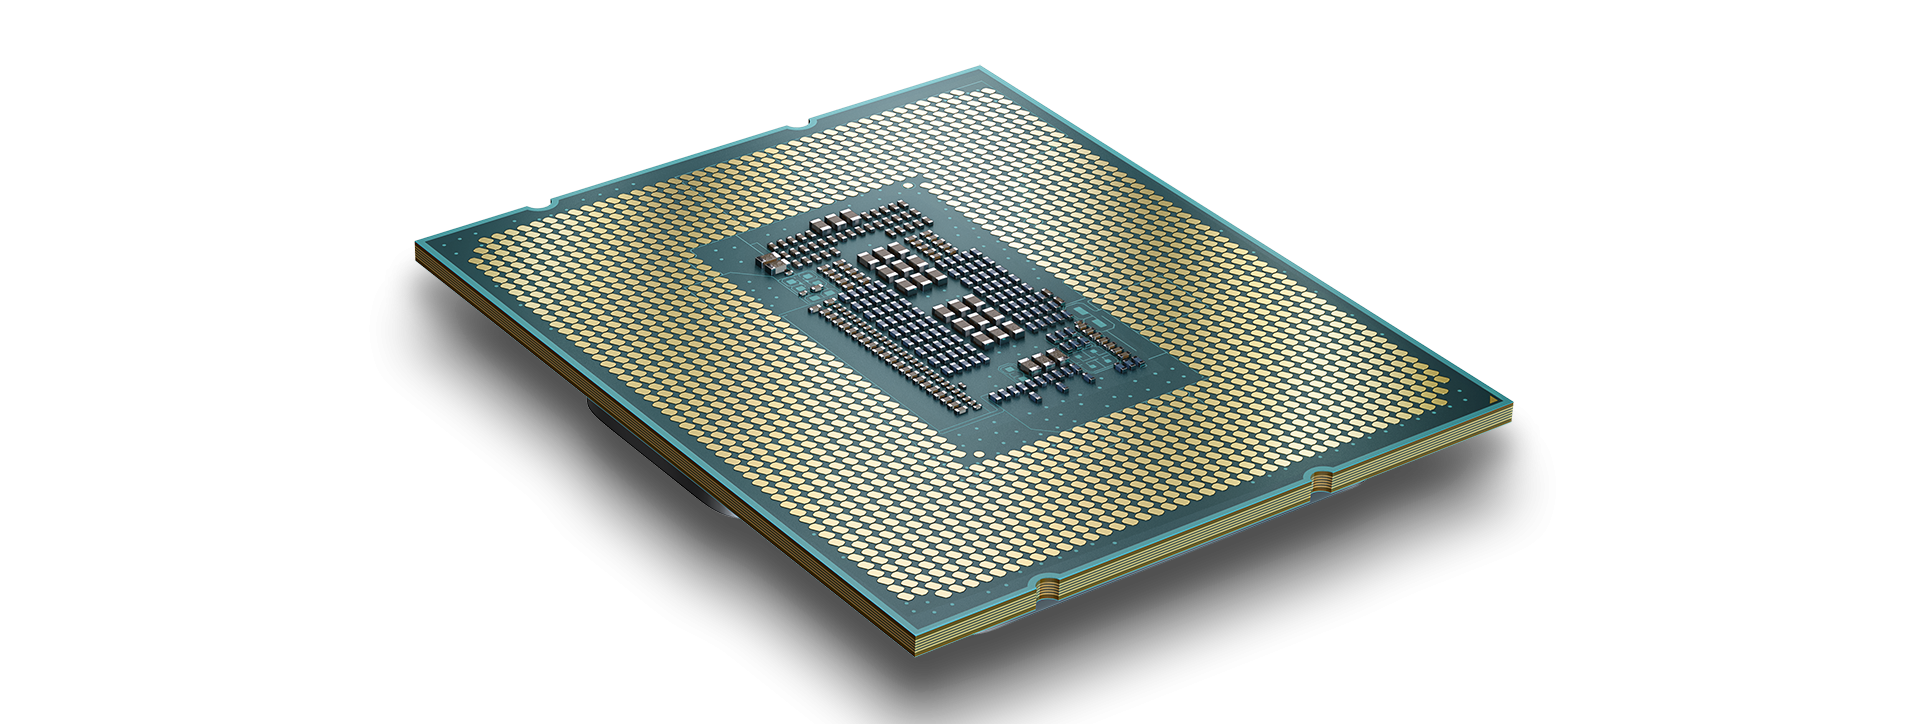 Intel chính thức ra mắt dòng vi xử lý Intel Core thế hệ 13 cùng giải pháp Intel Unison mới